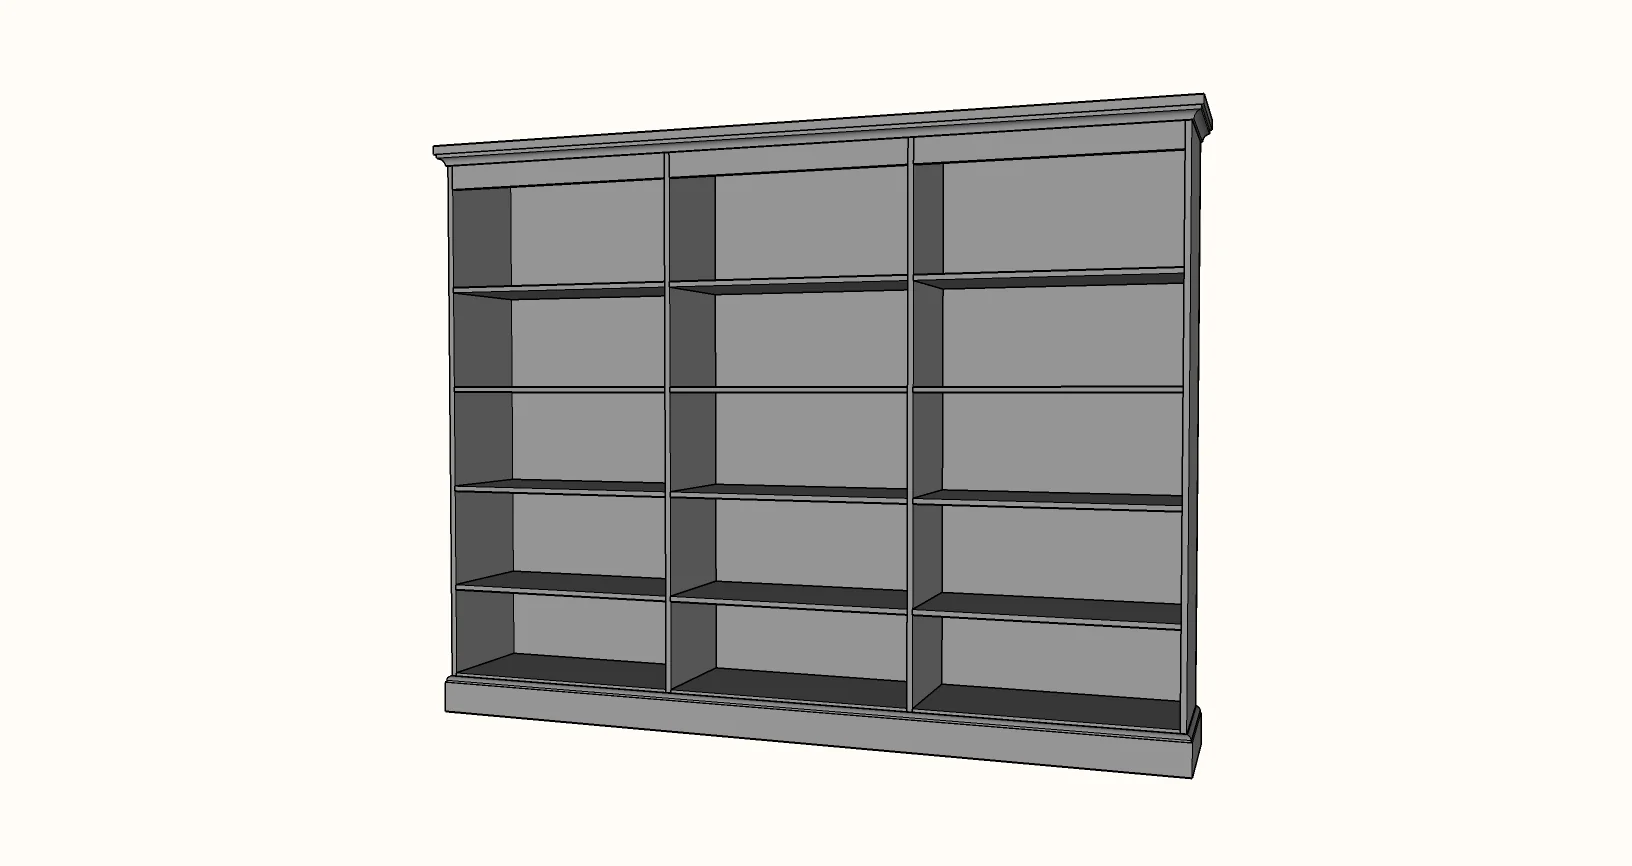 dimensions for custom bookshelf